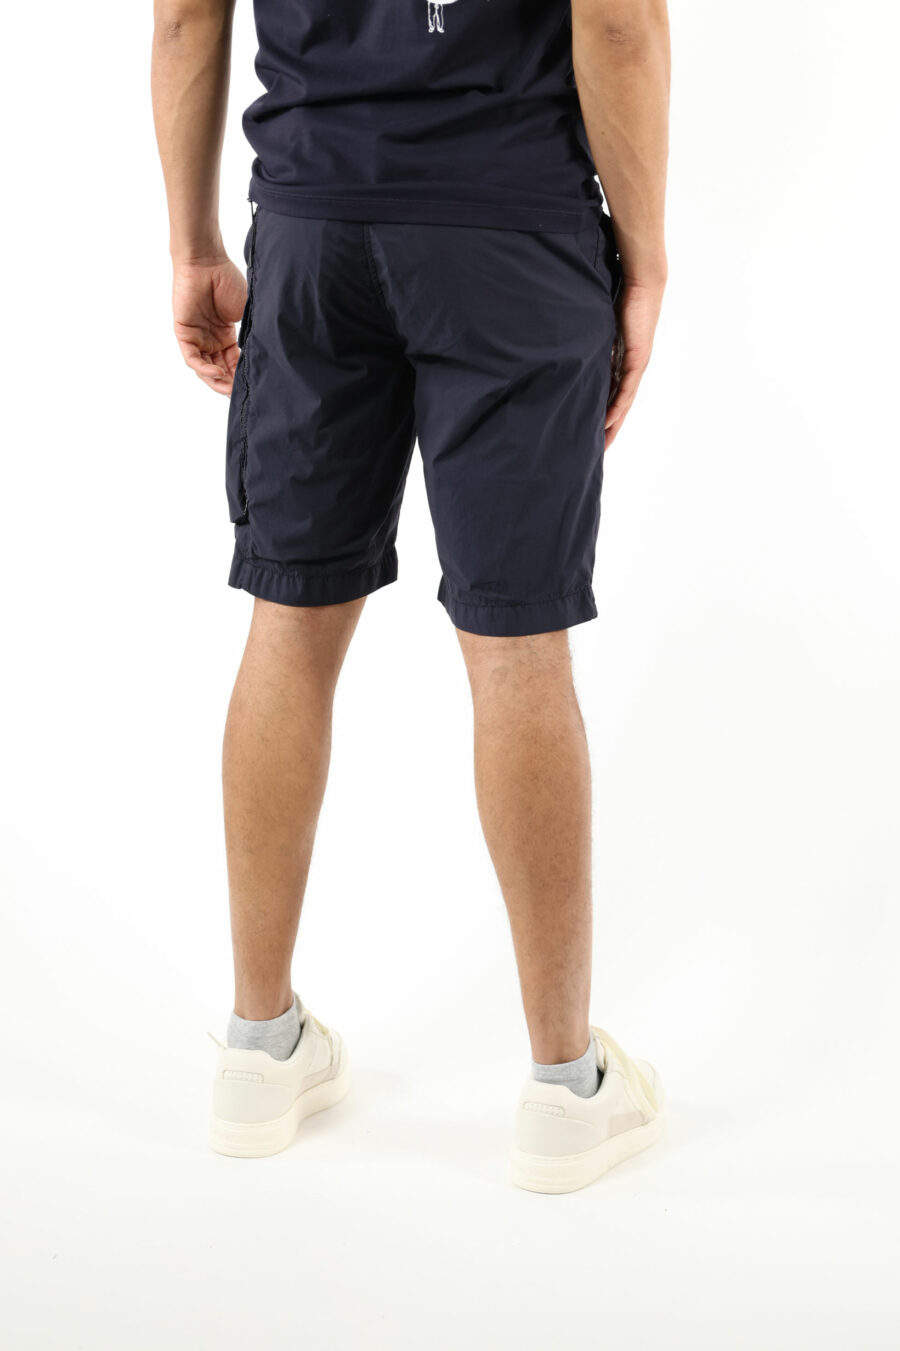 Pantalón corto midi azul oscuro con minilogo lente - 111364